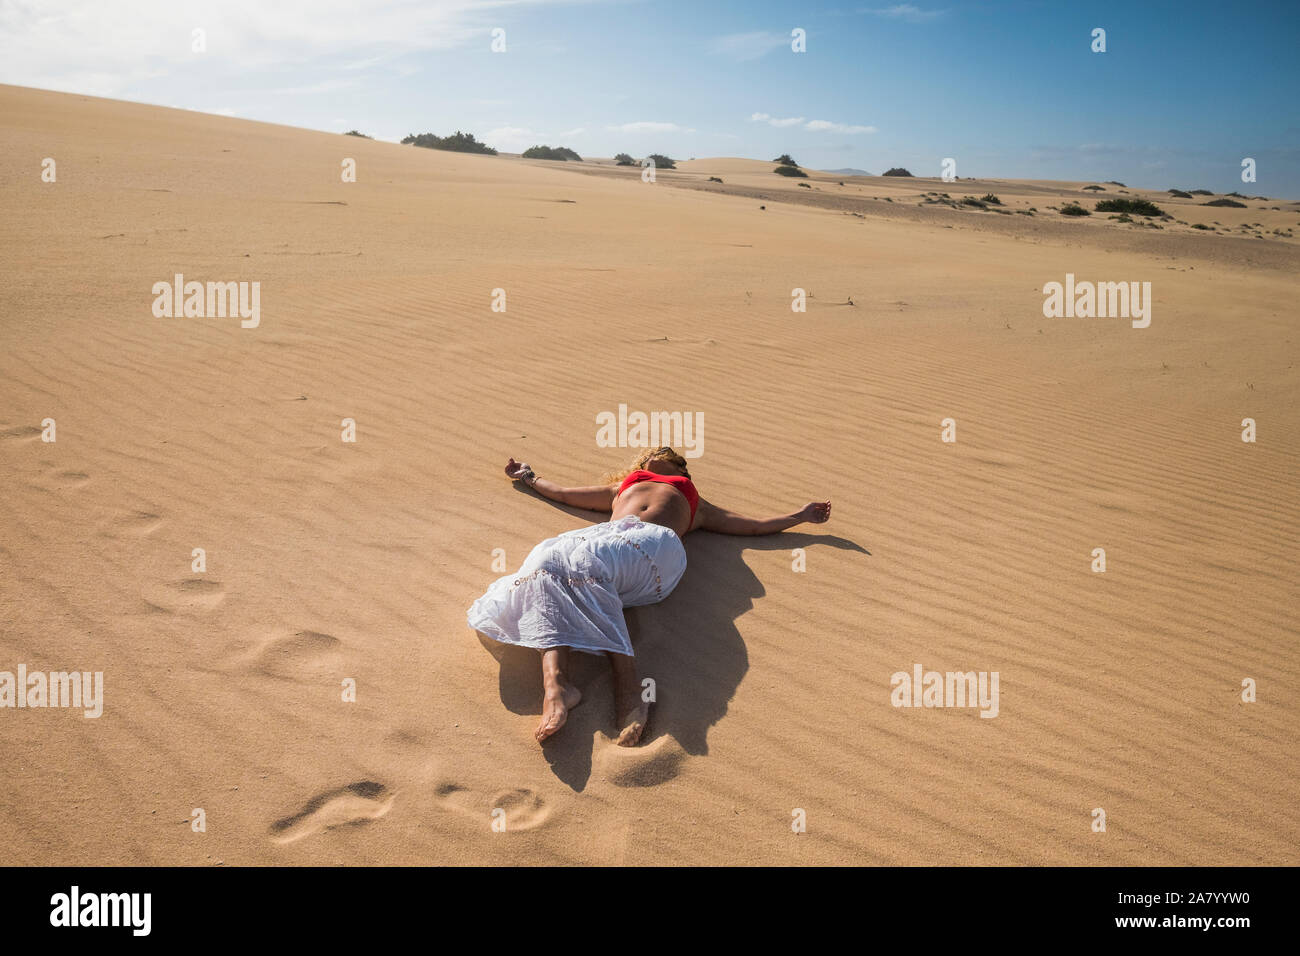 Le persone che si godono la vacanza e. tempo libero. attività in appoggio a fissare il dune di sabbia del deserto park - donna in un momento di relax a. La spiaggia durante la stagione estiva Foto Stock